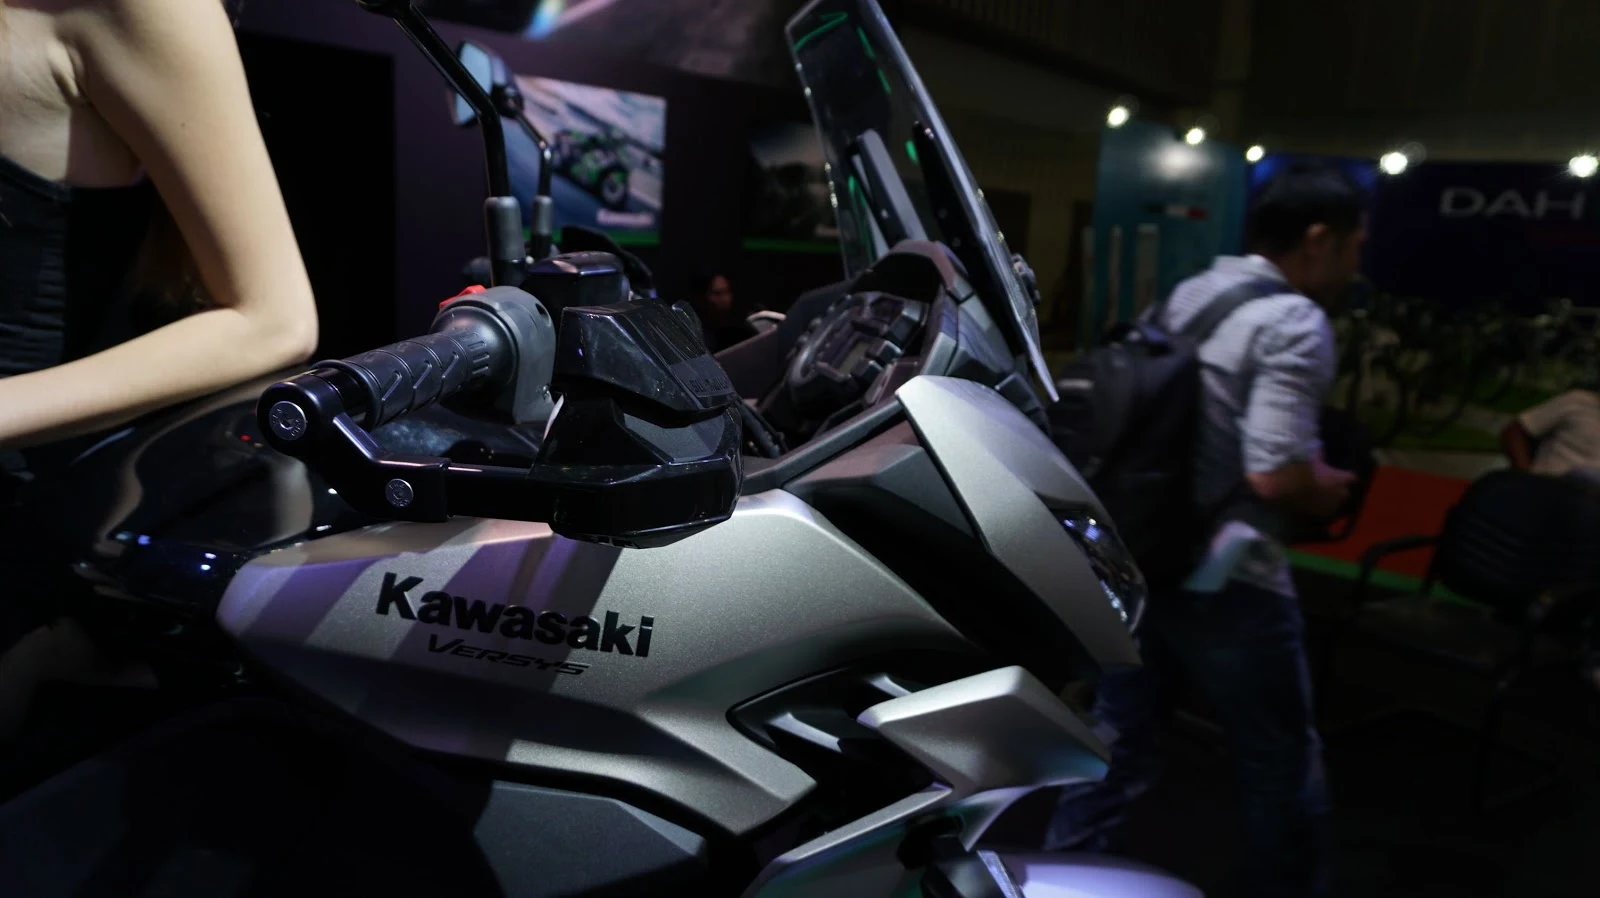 Cận cảnh siêu xe Kawasaki Versys 1000 tại VMS 2016